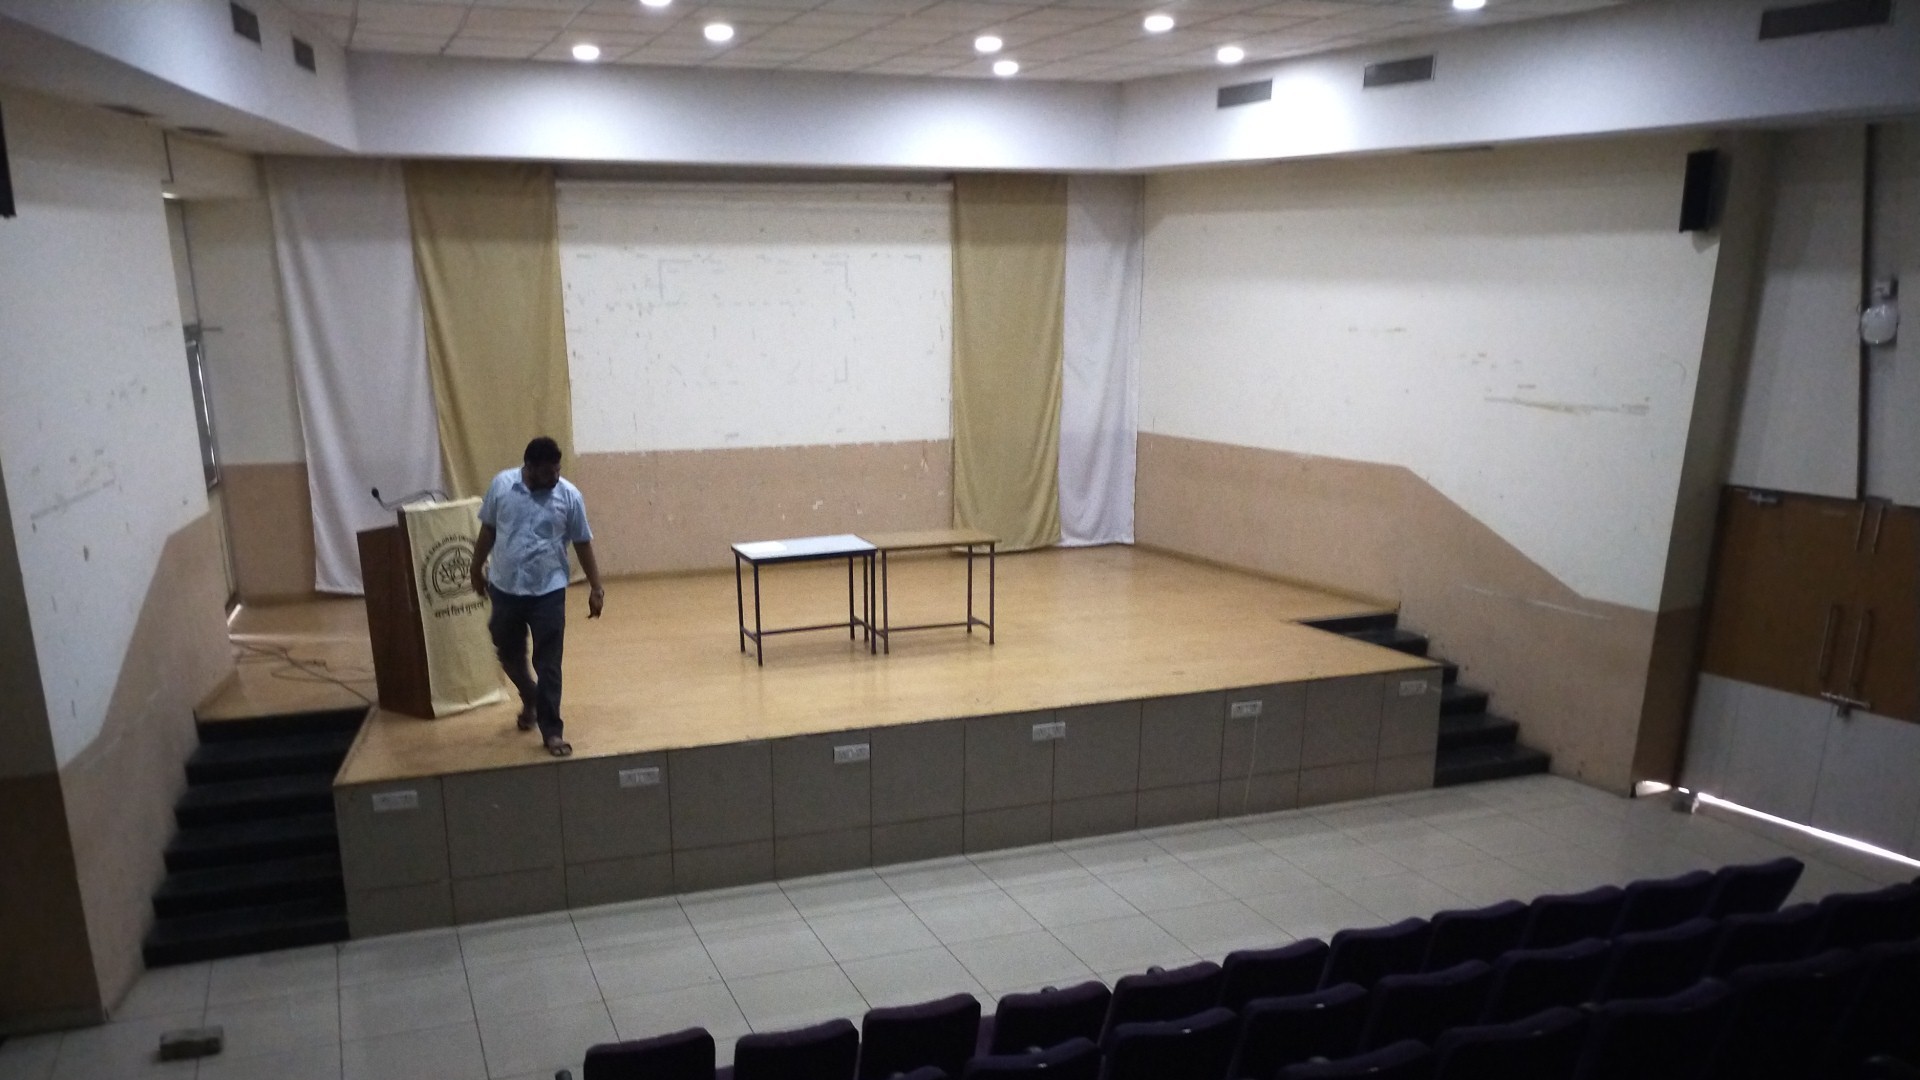  Pandit Deendayal Upadhyay Auditorium 